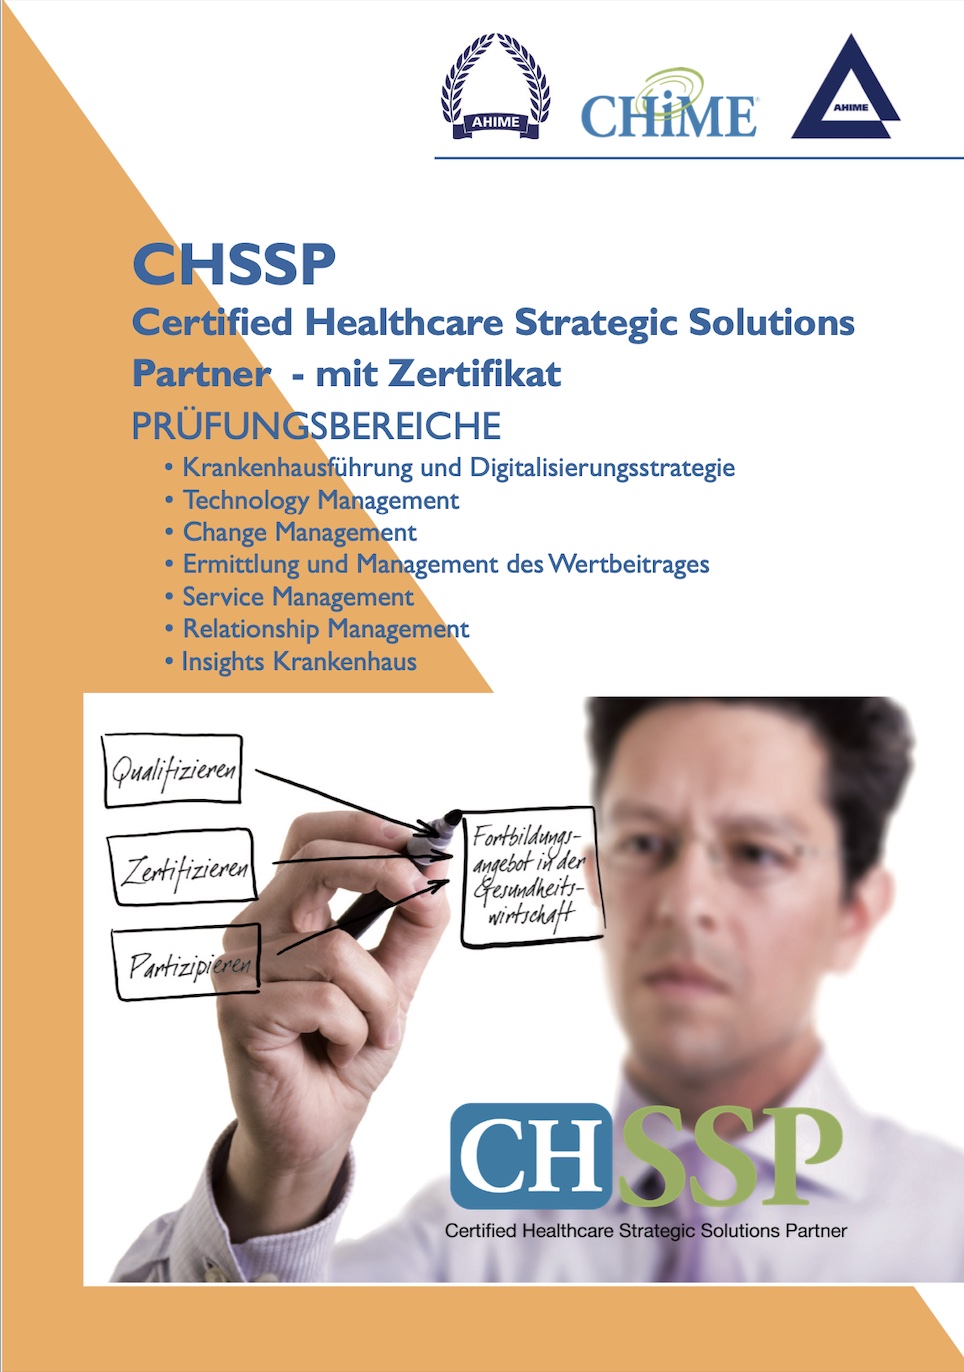 AHIME Academy: Weiterbildung zum CHSSP - Certified Healthcare SSP